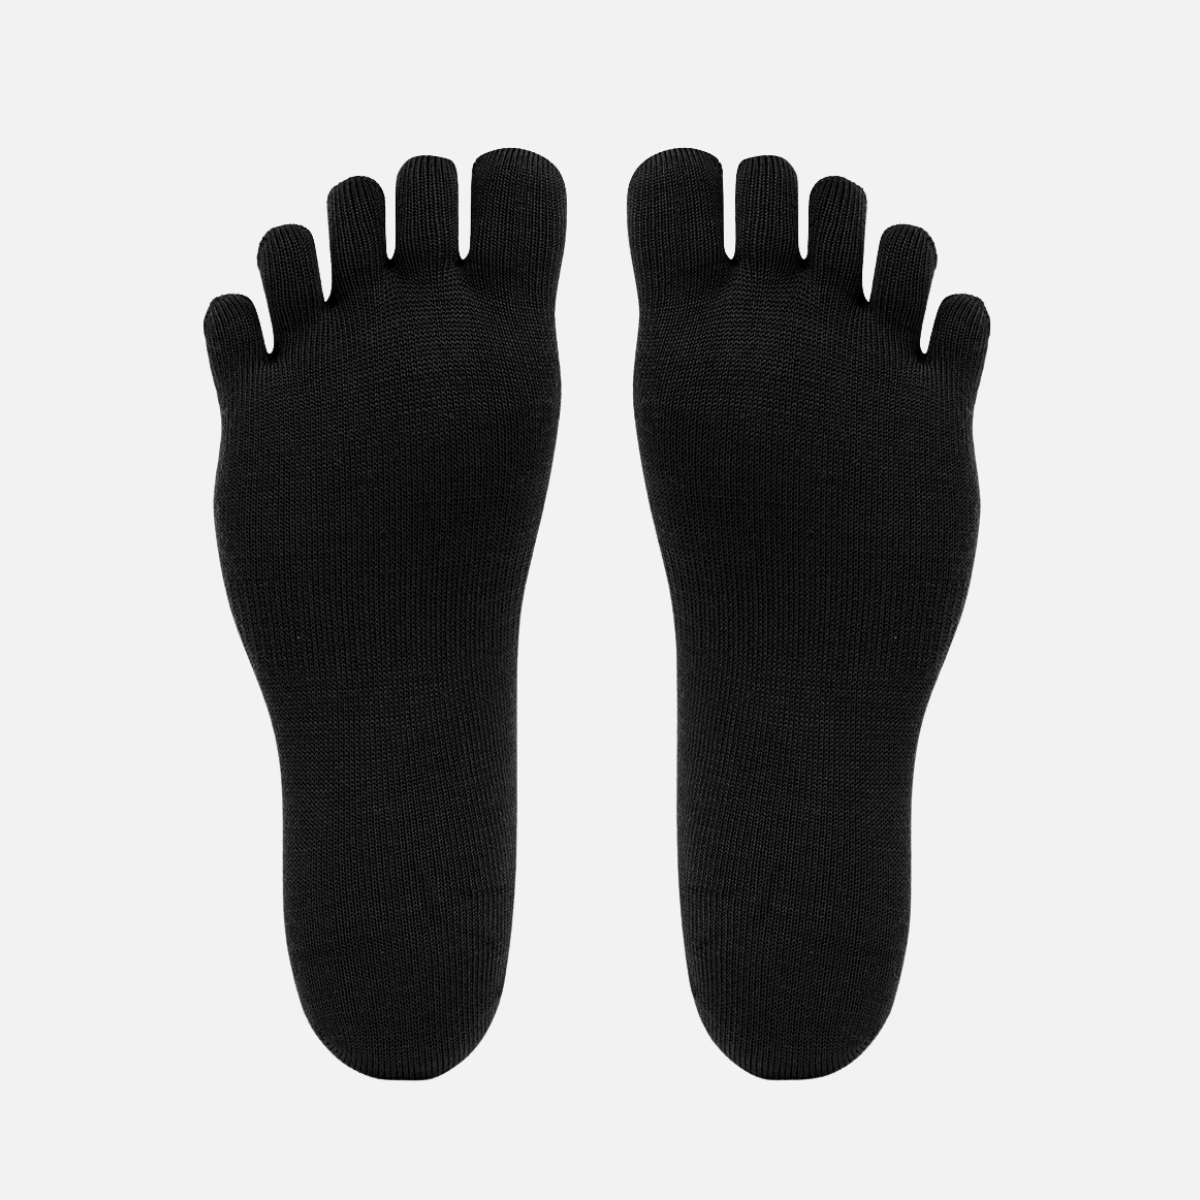 Vibram Merino Wool-Blend Crew Toe Socks (Black)